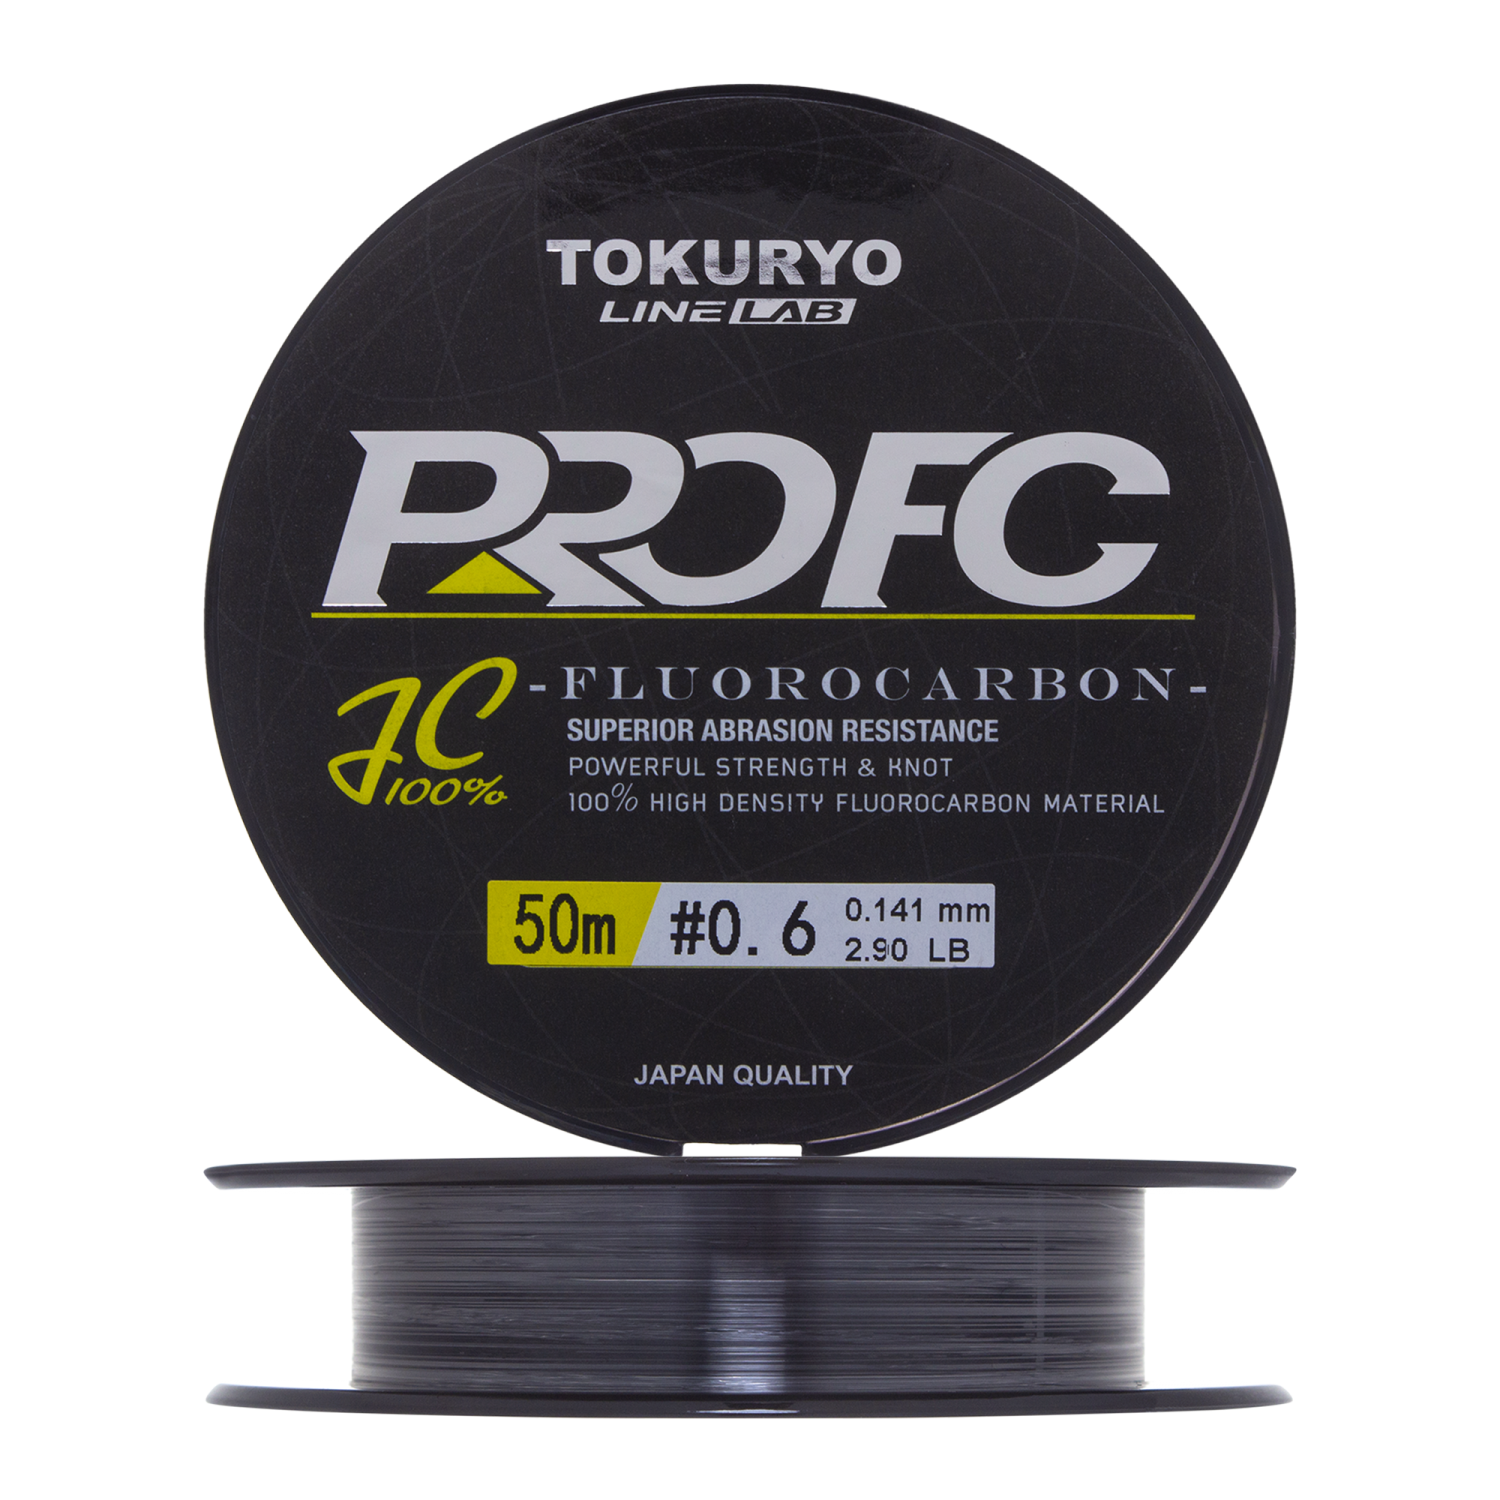 Флюорокарбон Tokuryo Fluorocarbon Pro FC #0,6 50м (clear)